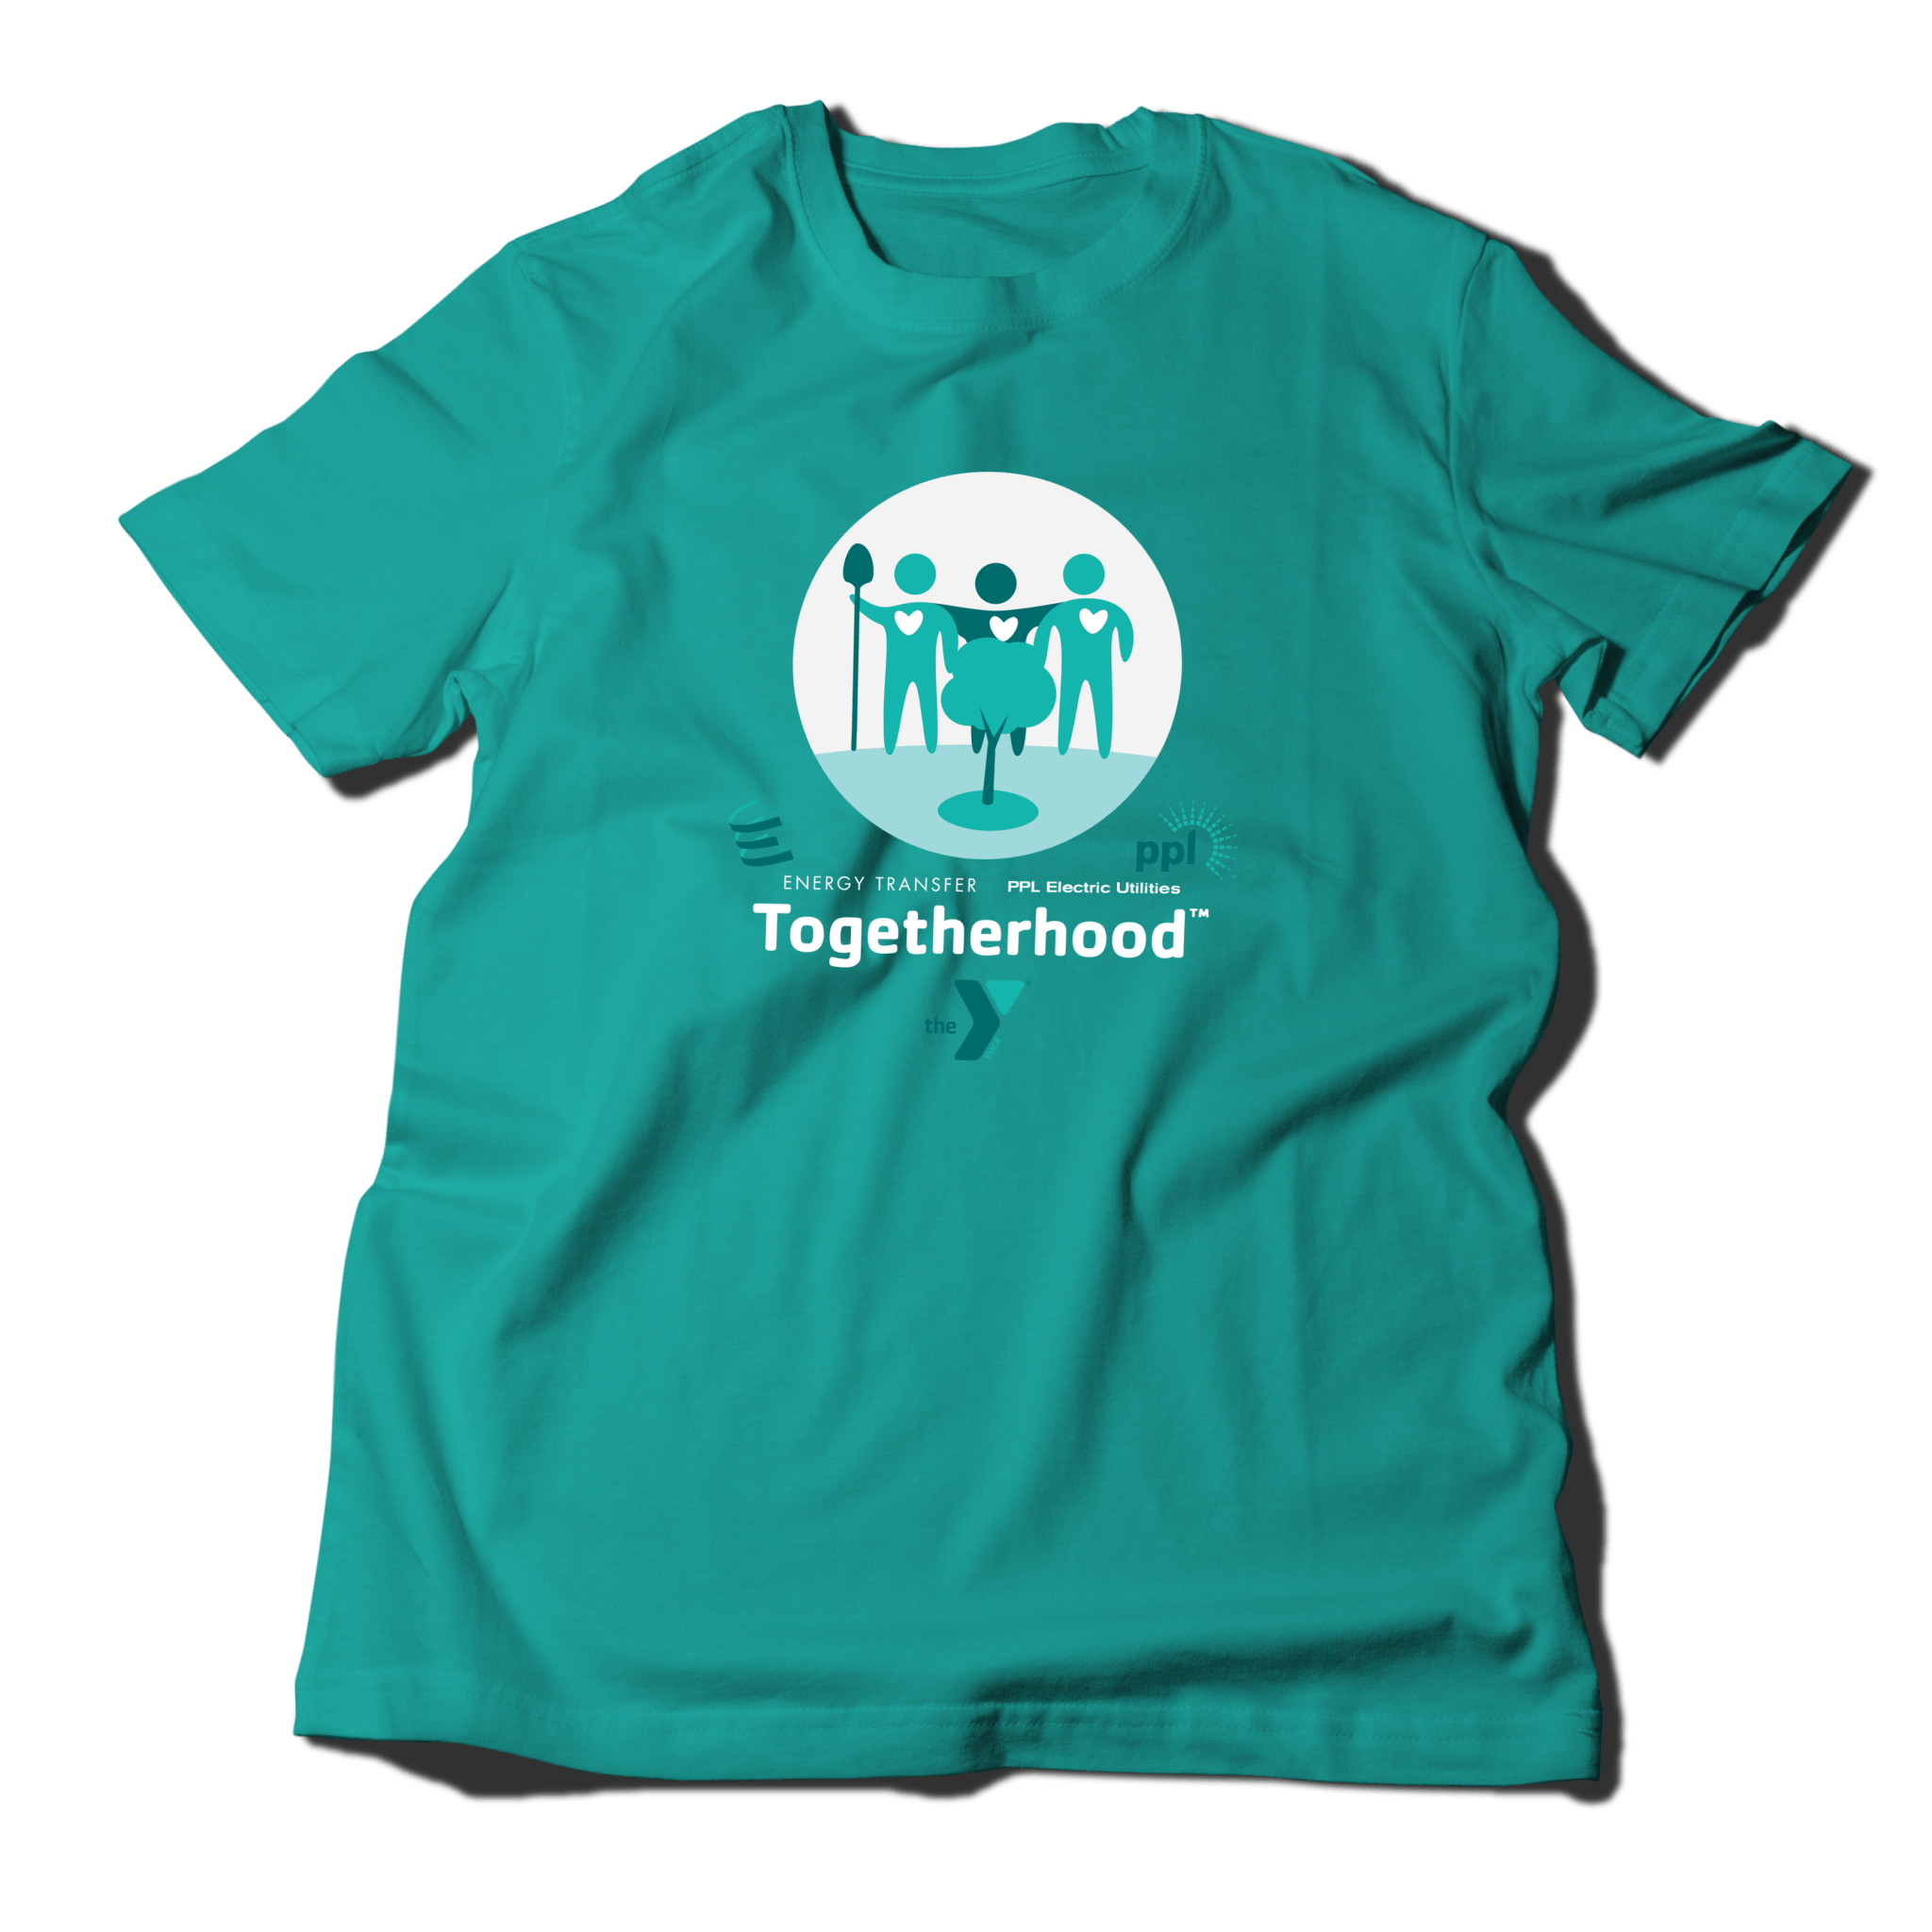 Tshirt_Togetherhood